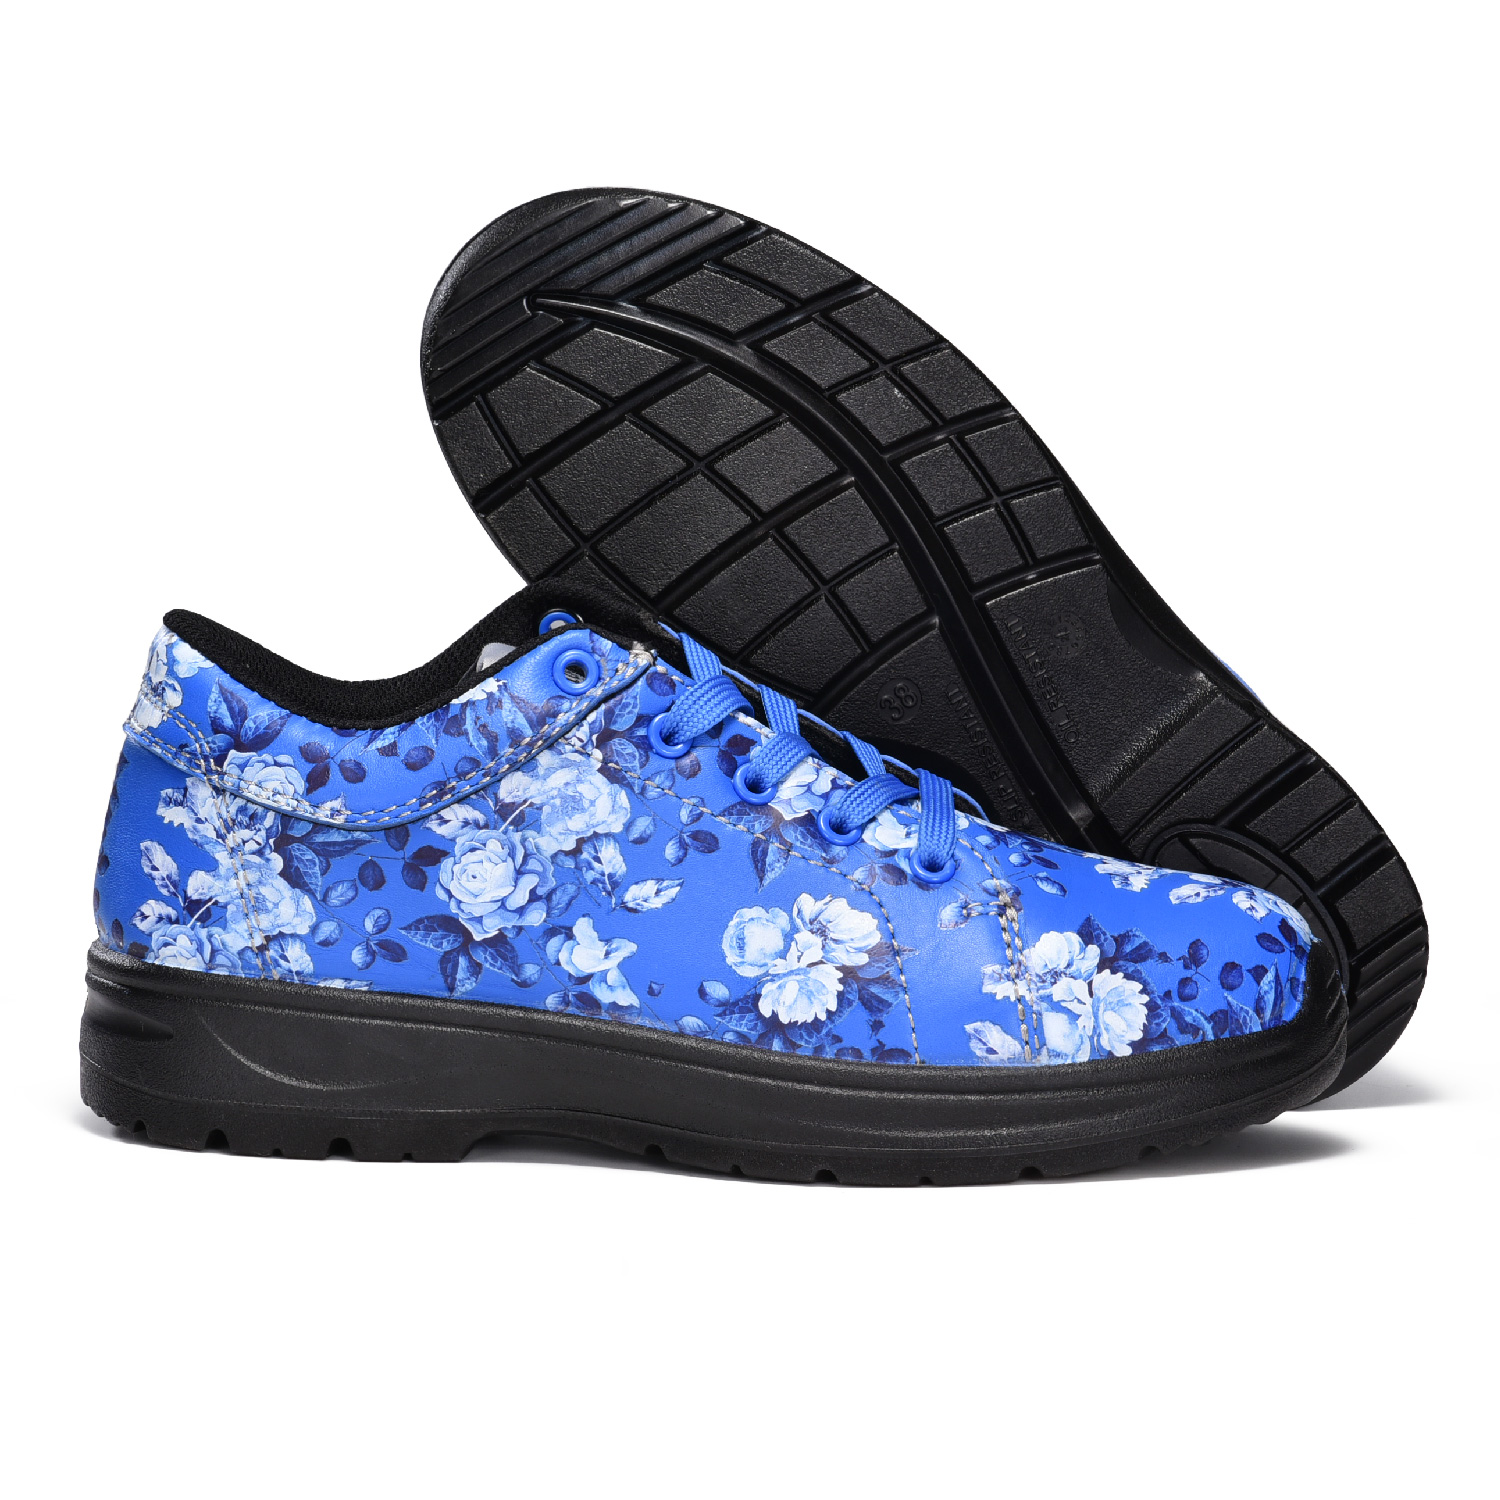 Garden Design Waterproof Steel Toe Safety Shoes for Women L-7526 Blue